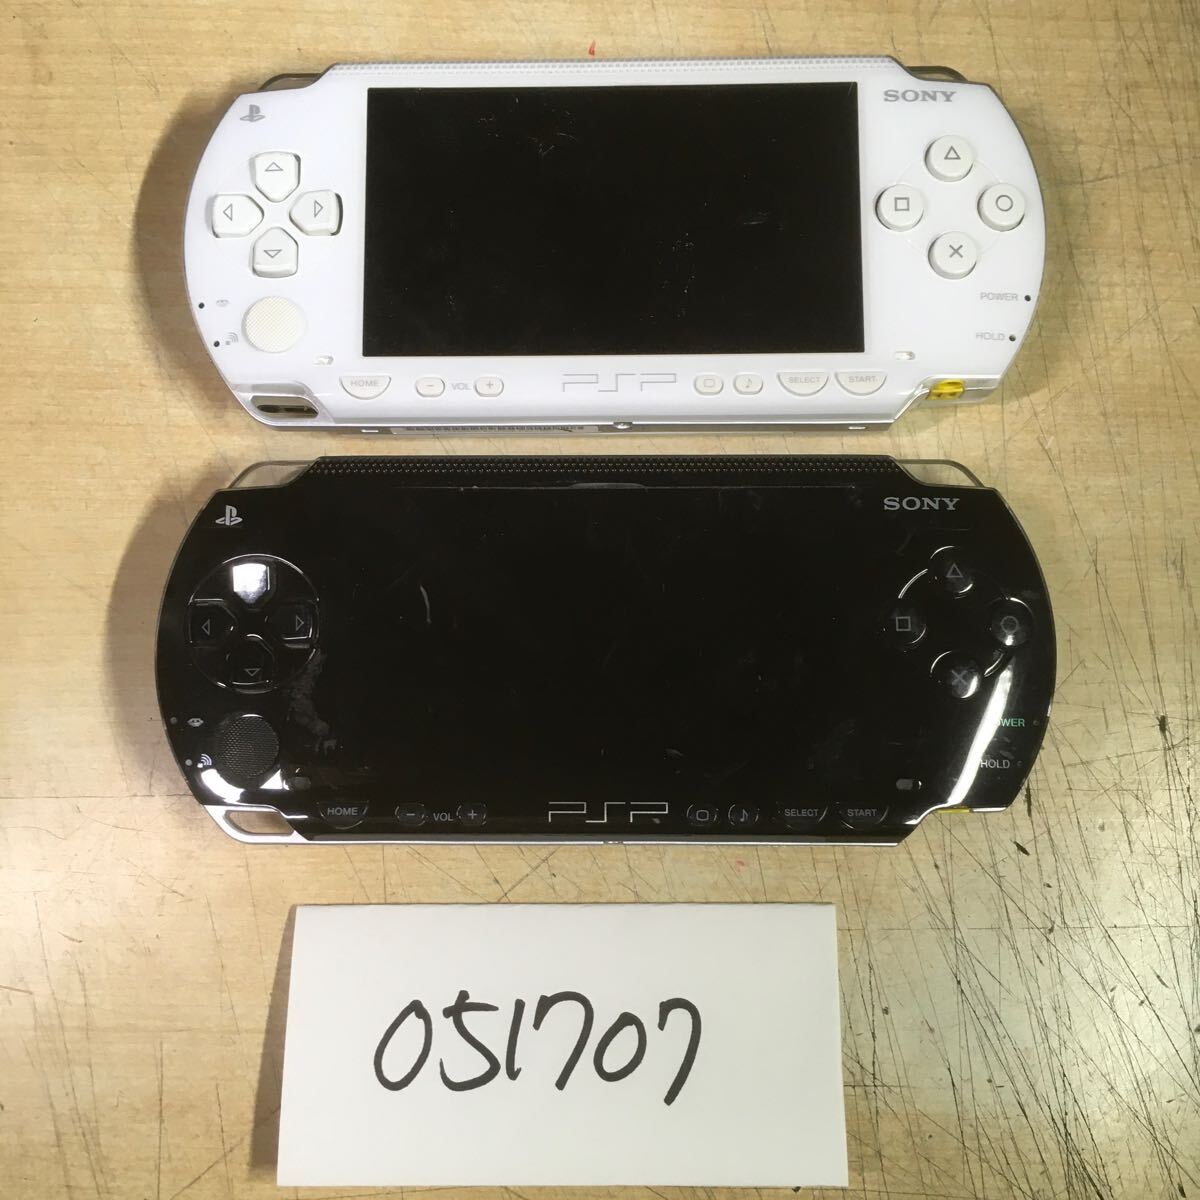 【送料無料】(051707C) SONY PSP1000 本体のみ ジャンク品 2台セット_画像1